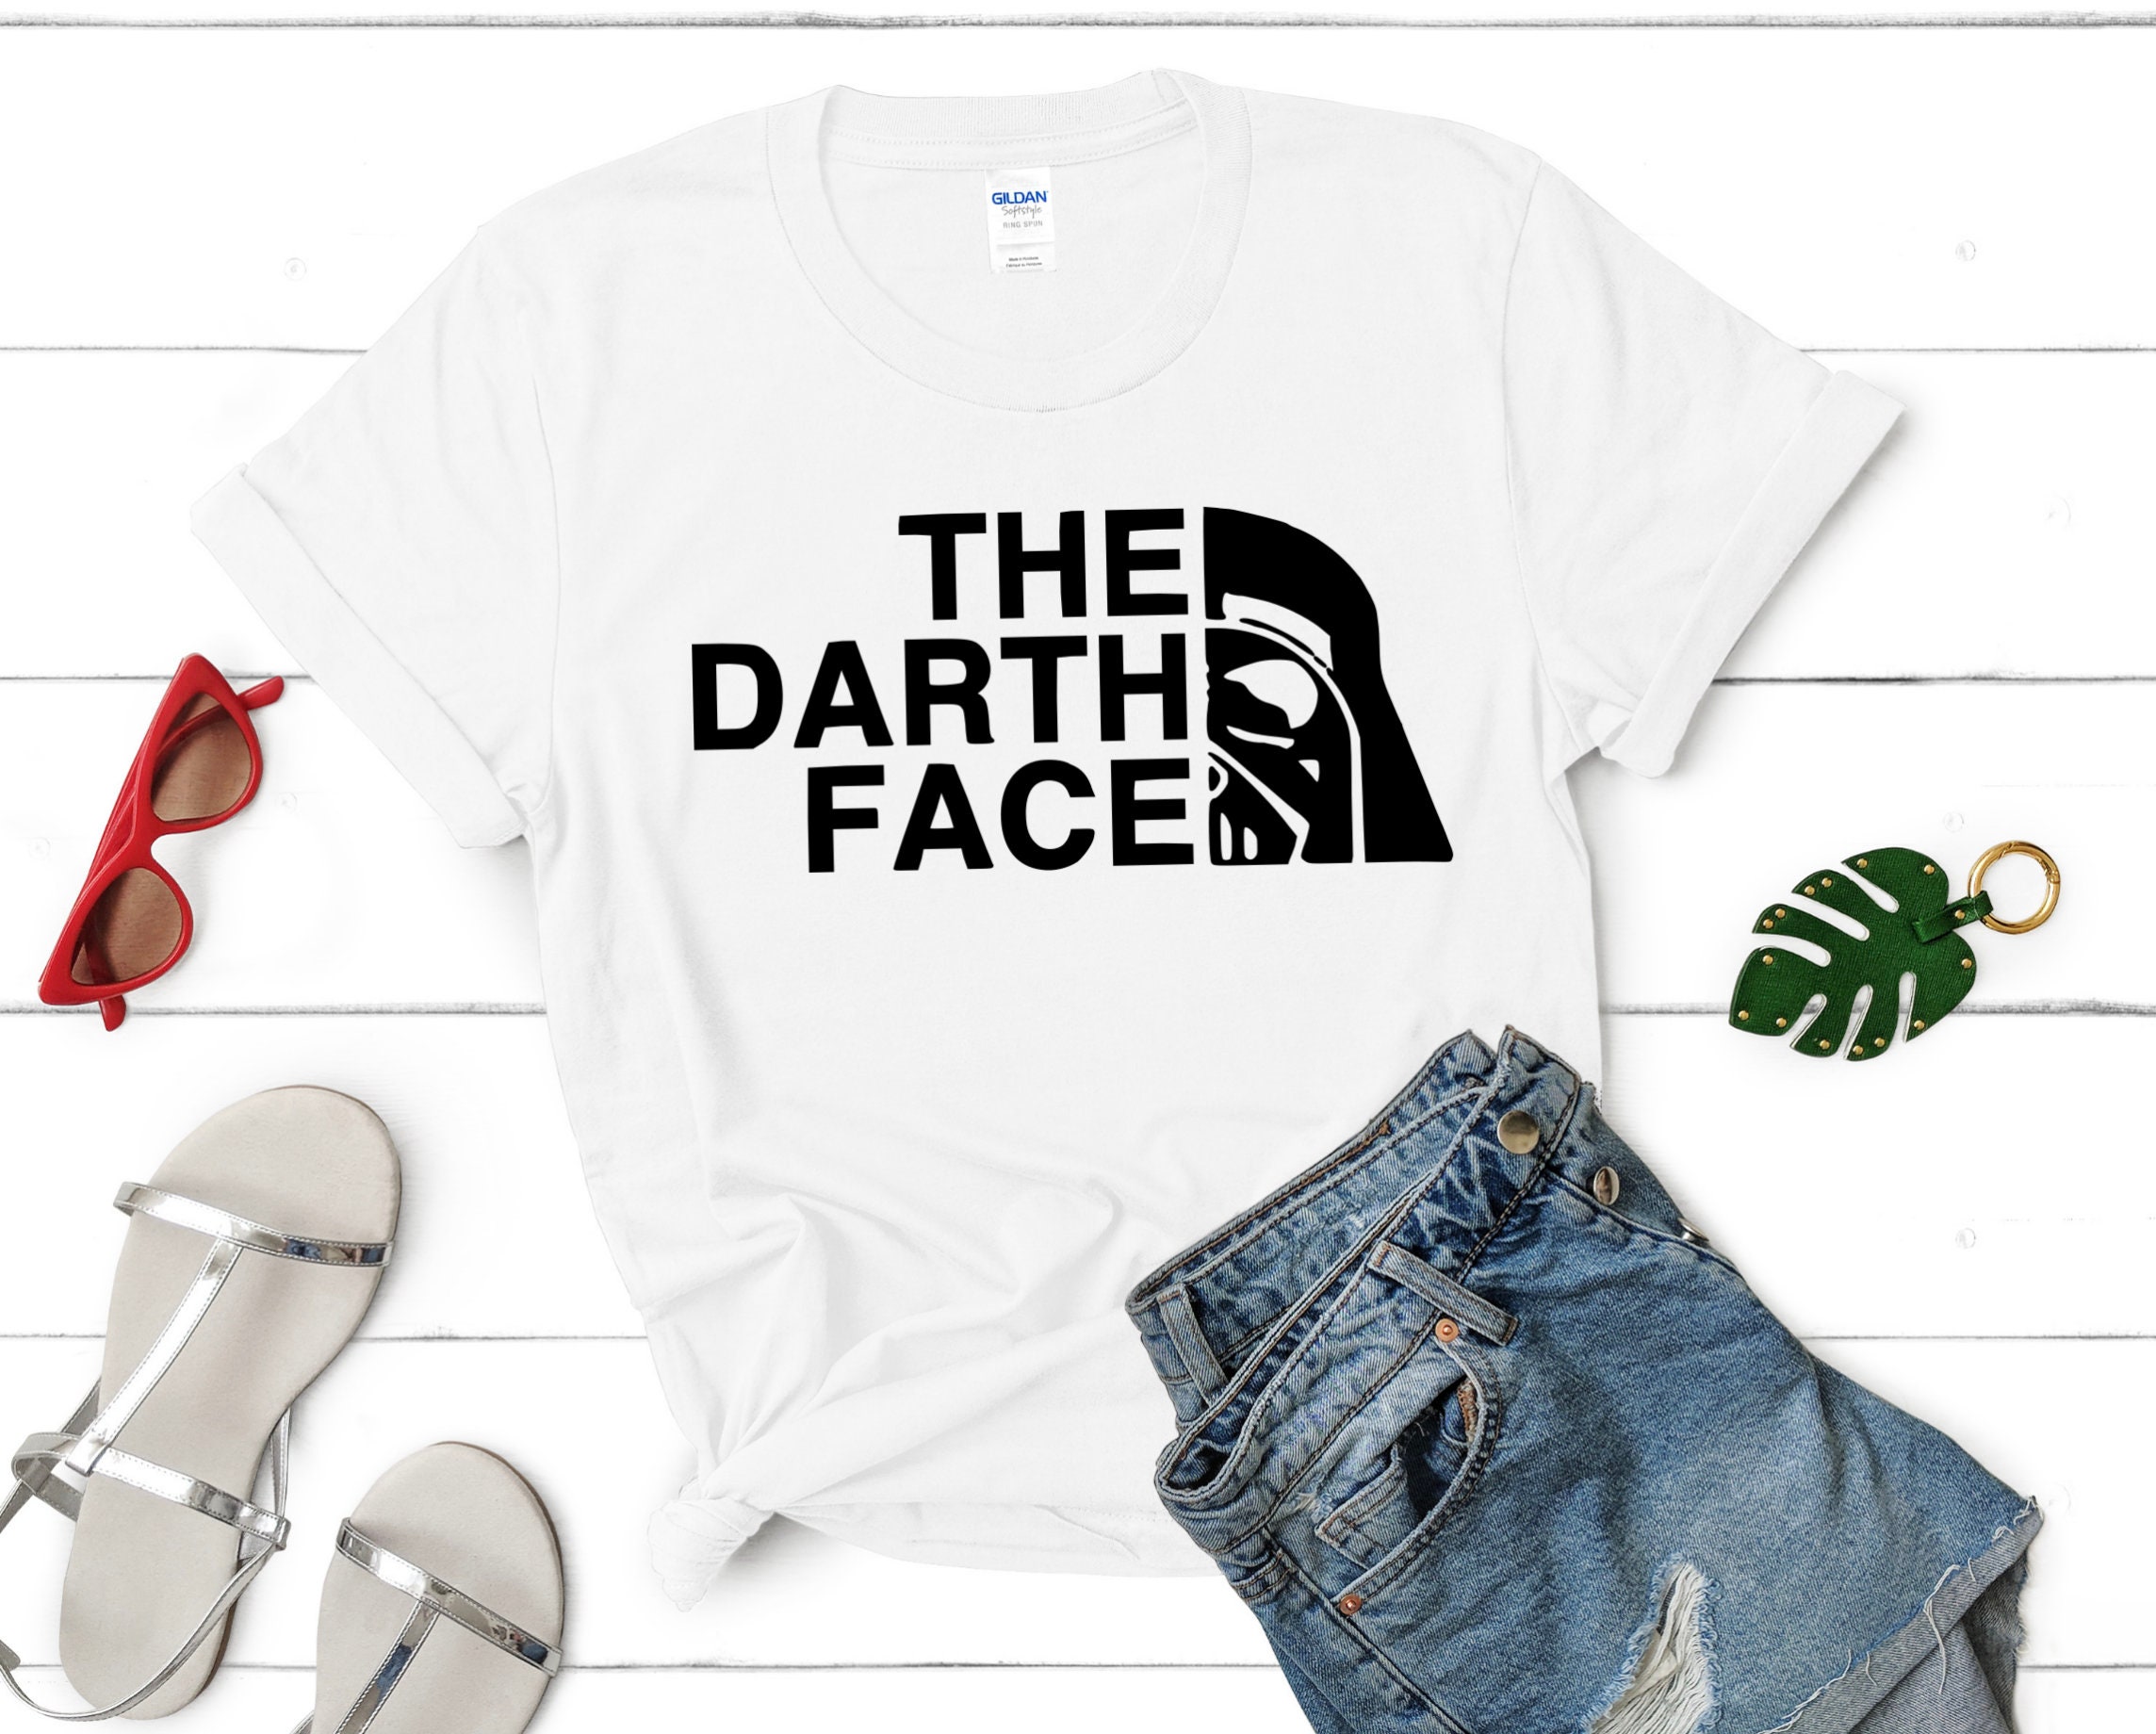 Starwars Darth Vader Pirates Hawaiian Shirt For Men - Jolly Family Gifts